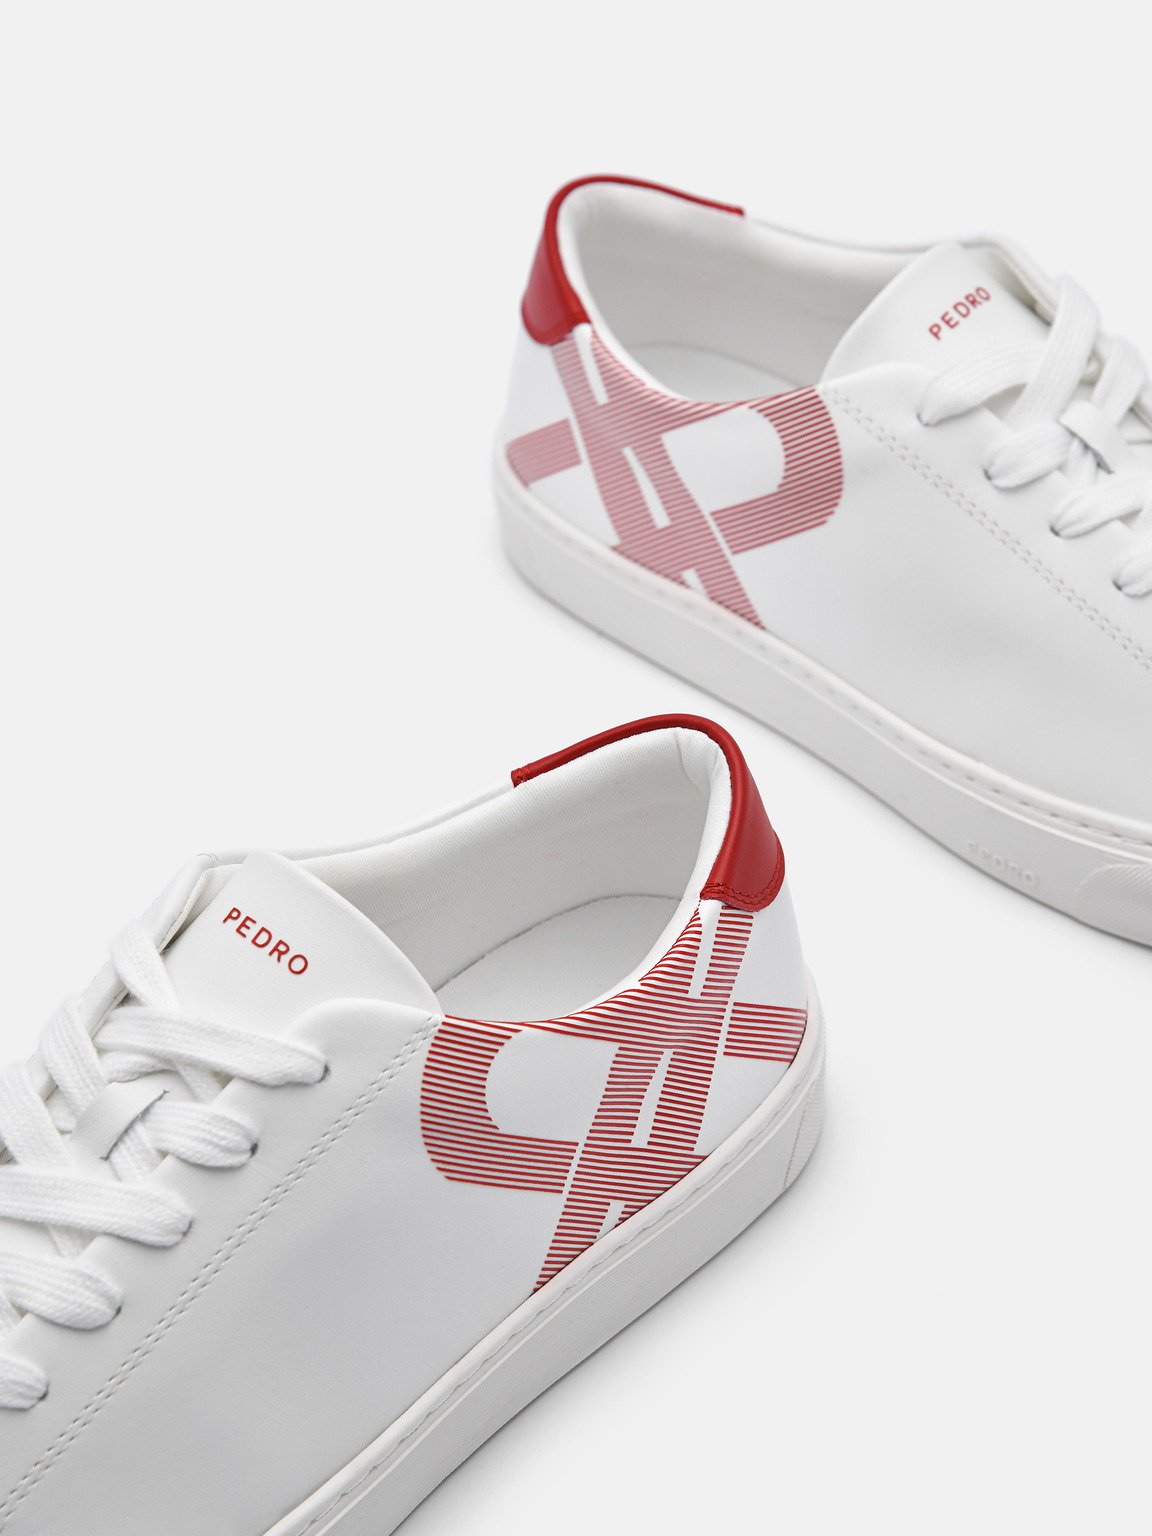 Women's PEDRO Icon Ridge Leather Sneakers, White